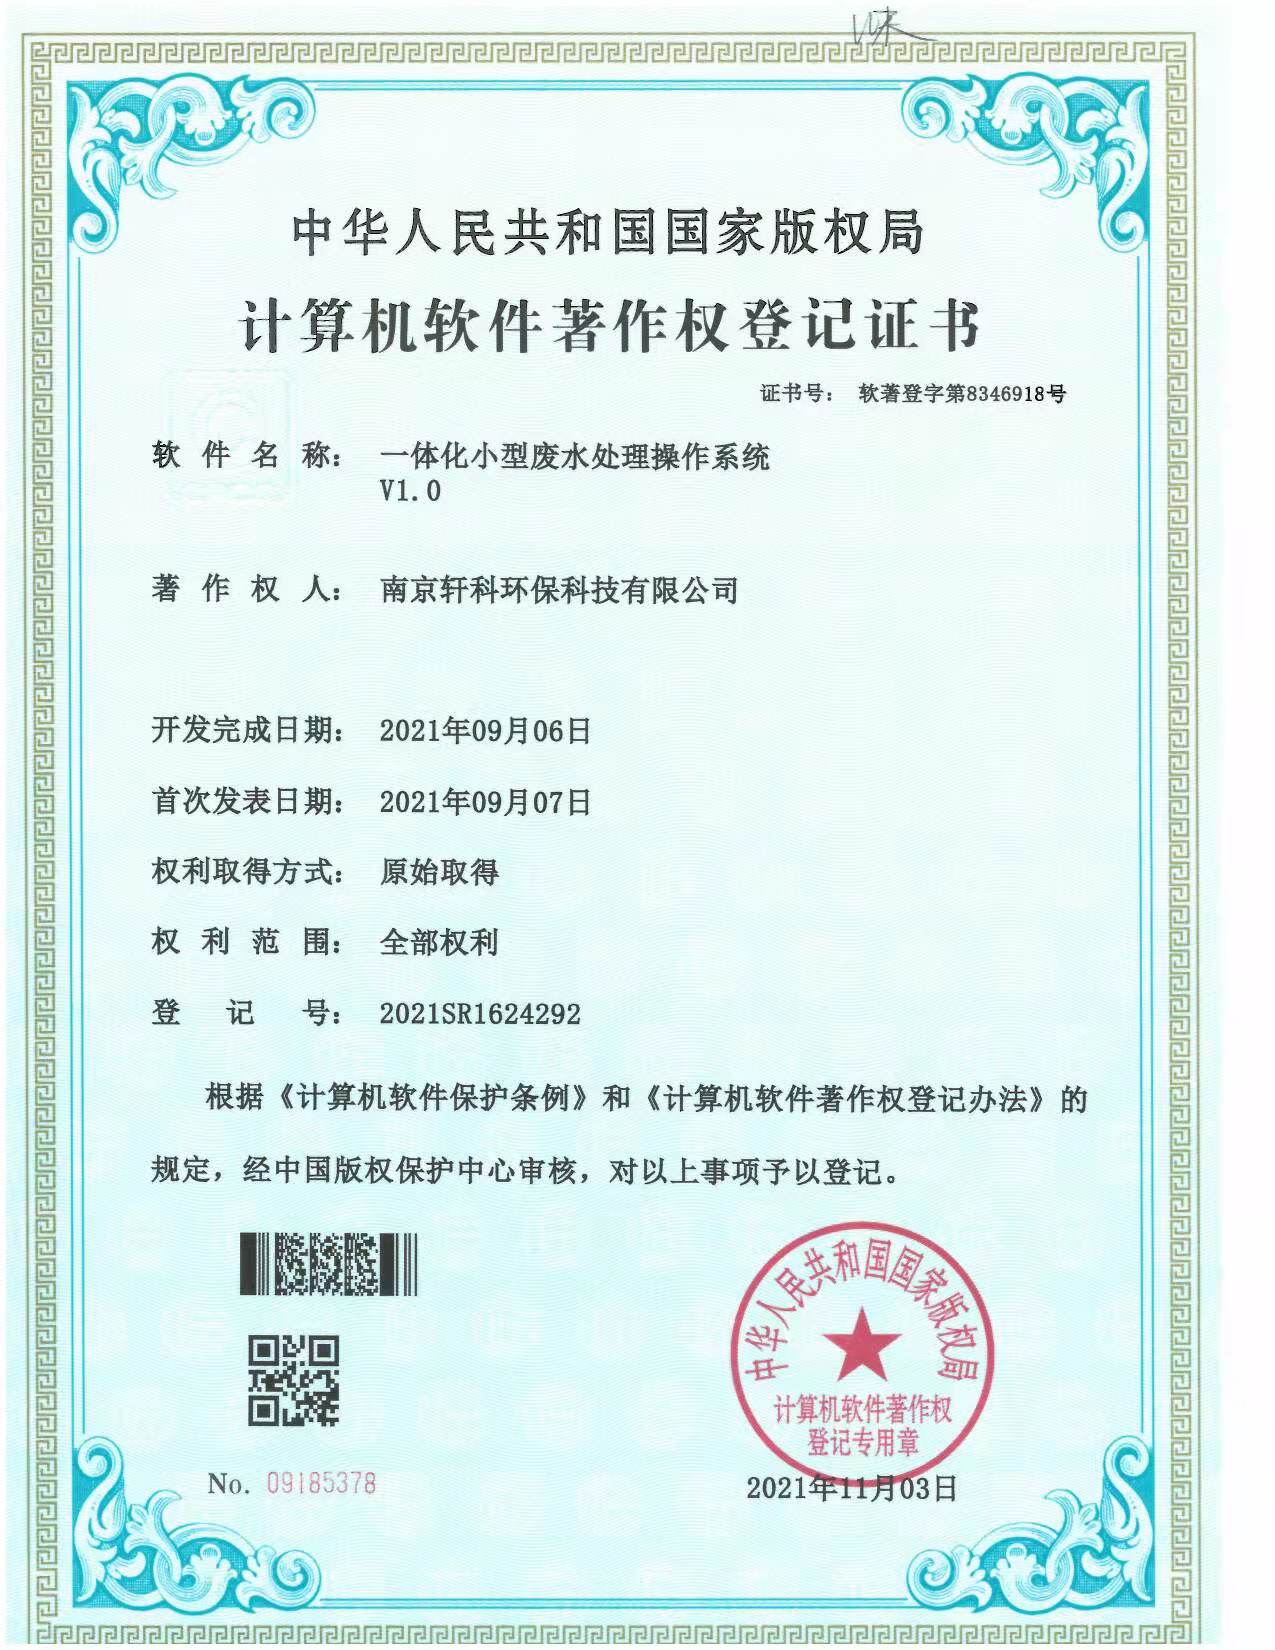 杭州小型一体化废水处理系统软件著作权证书